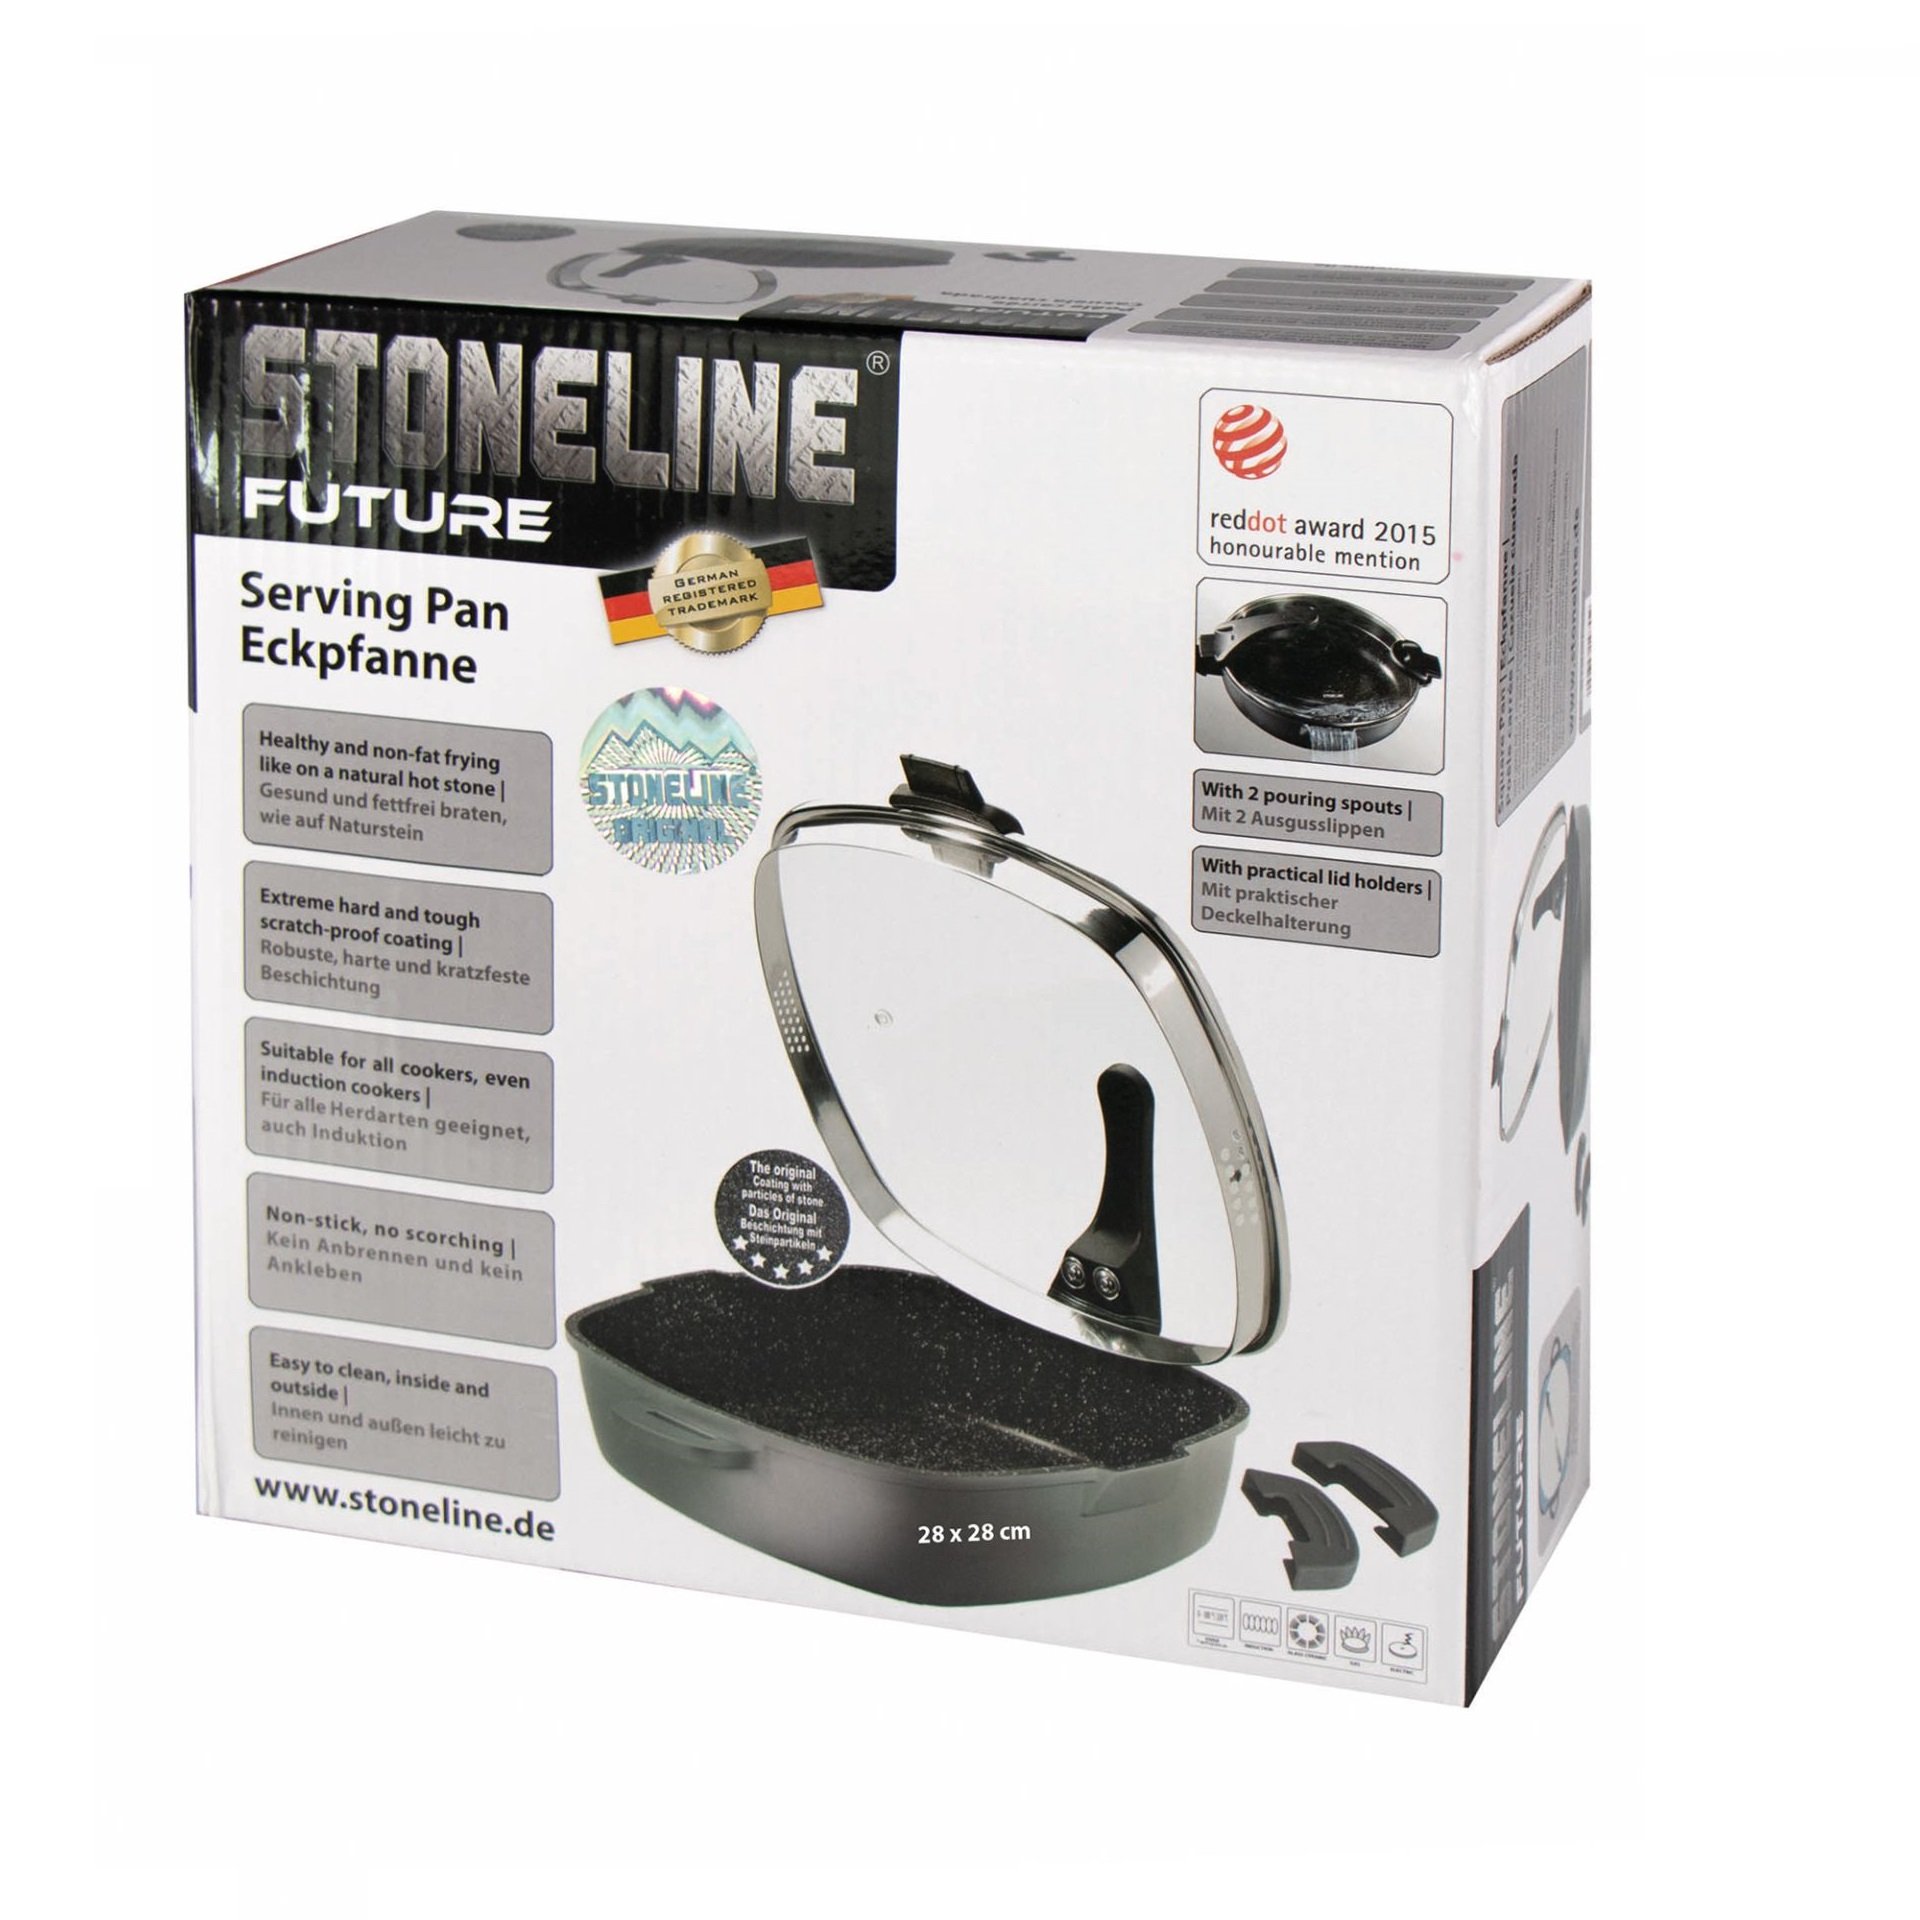 STONELINE® Square Serving Pan 28 cm, Strainer Lid, 2 Spouts, Non-Stick Pan | FUTURE